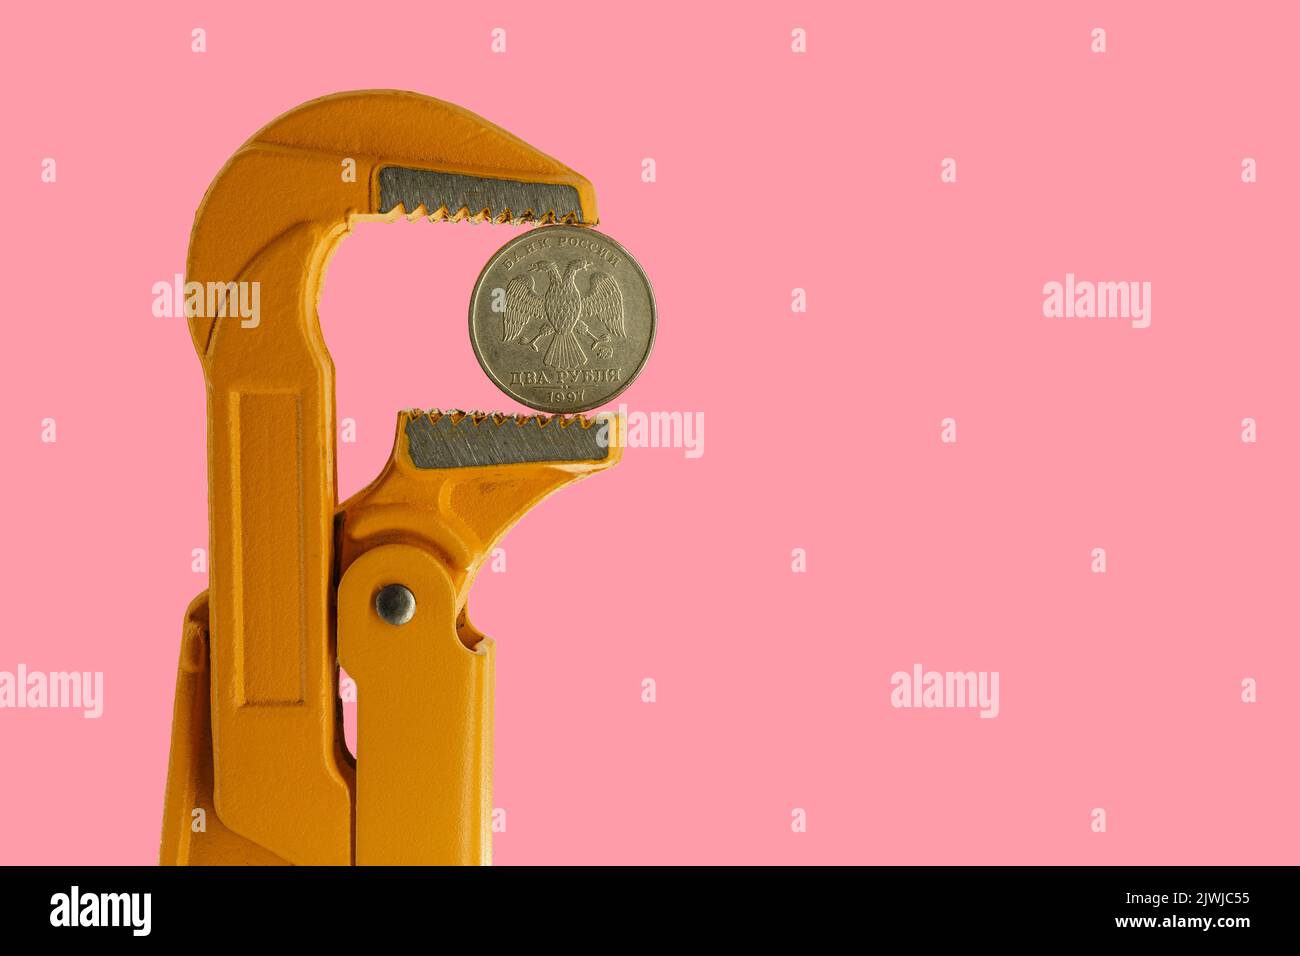 Moneta russa a due rubli tenuta in una chiave per idraulico arancione su sfondo rosa. Lato opposto della moneta. Foto Stock